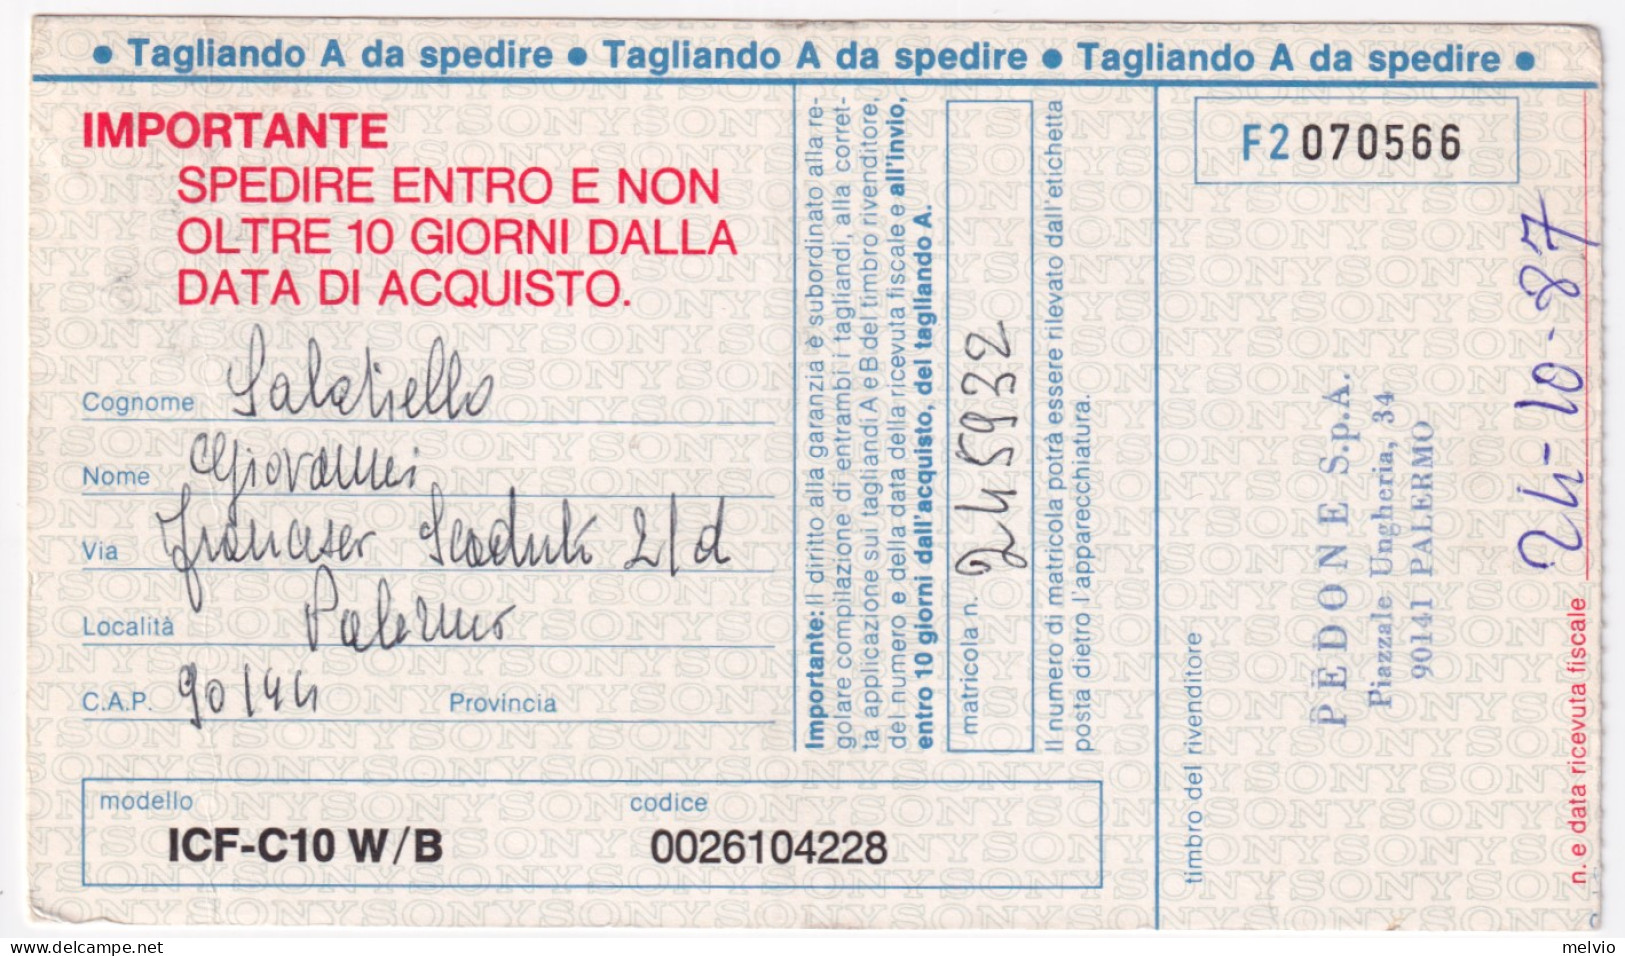 1987-NATALE '87 Lire 500 (1815) Isolato Su Artolina Tassata (annullo Meccanico)  - 1981-90: Poststempel